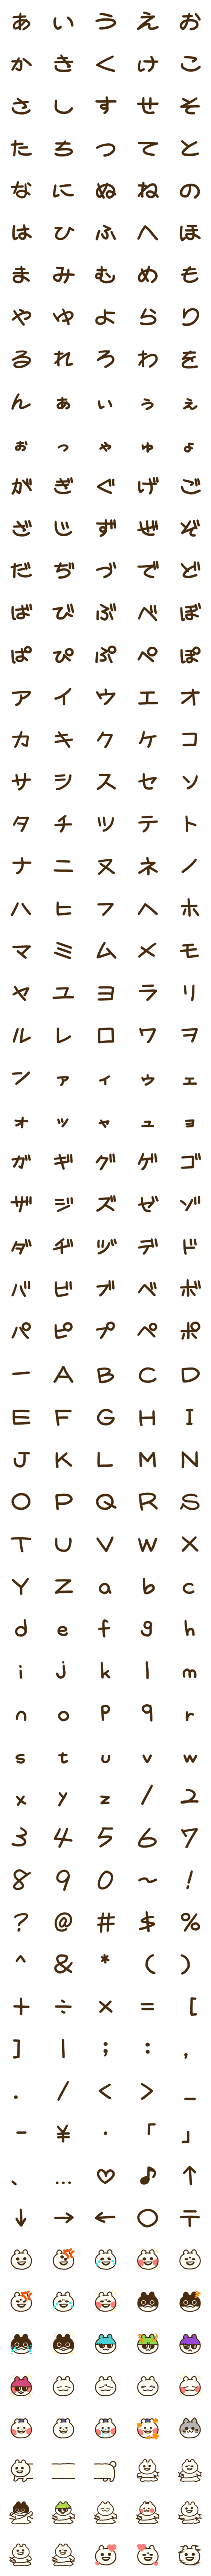 マエバ文字-詳細画像